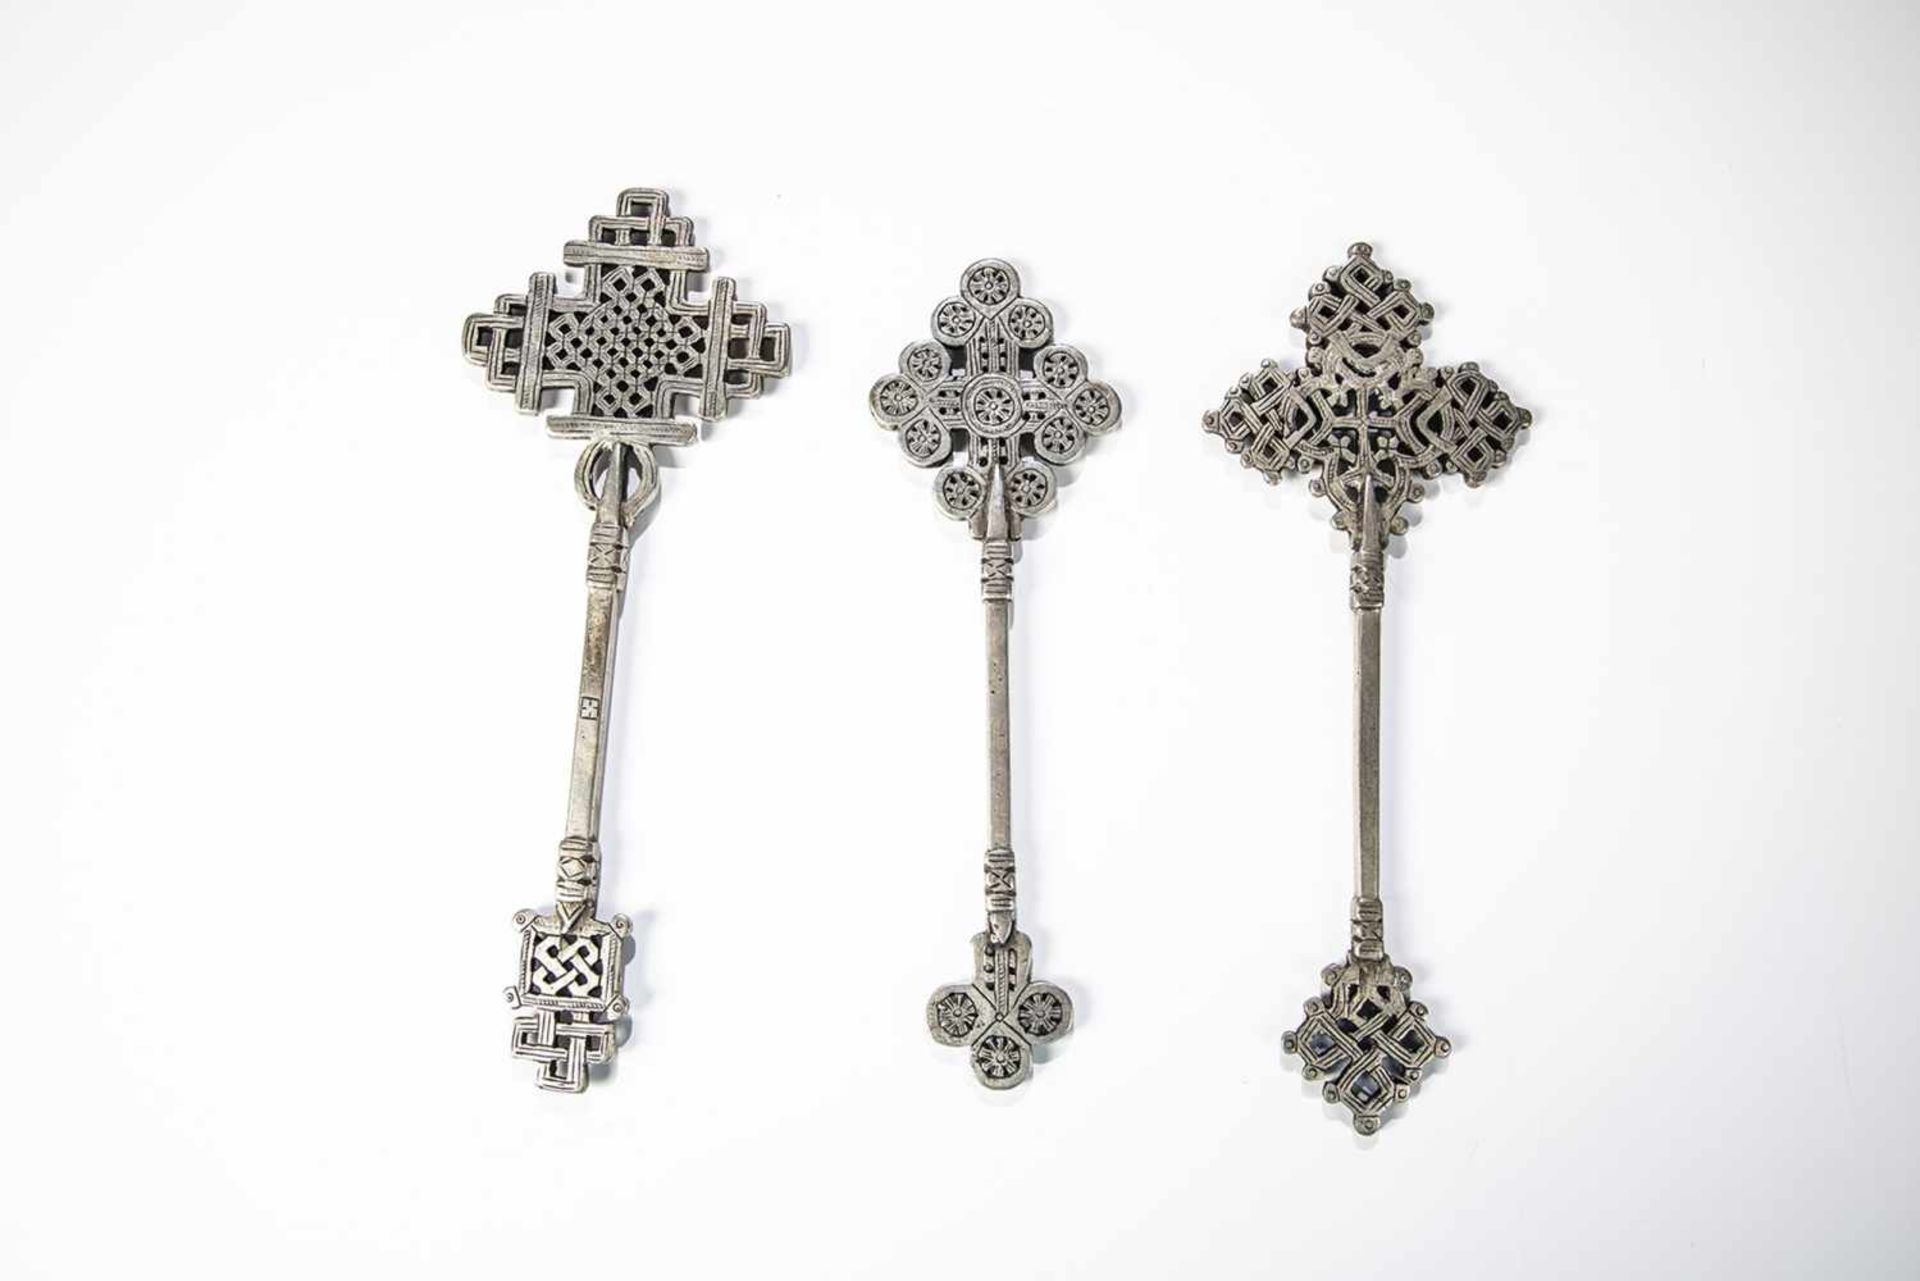 Three coptic crosses. Ethiopia, 19th/20th century. Cast metal. 17 - 19 cm long.Drei koptische